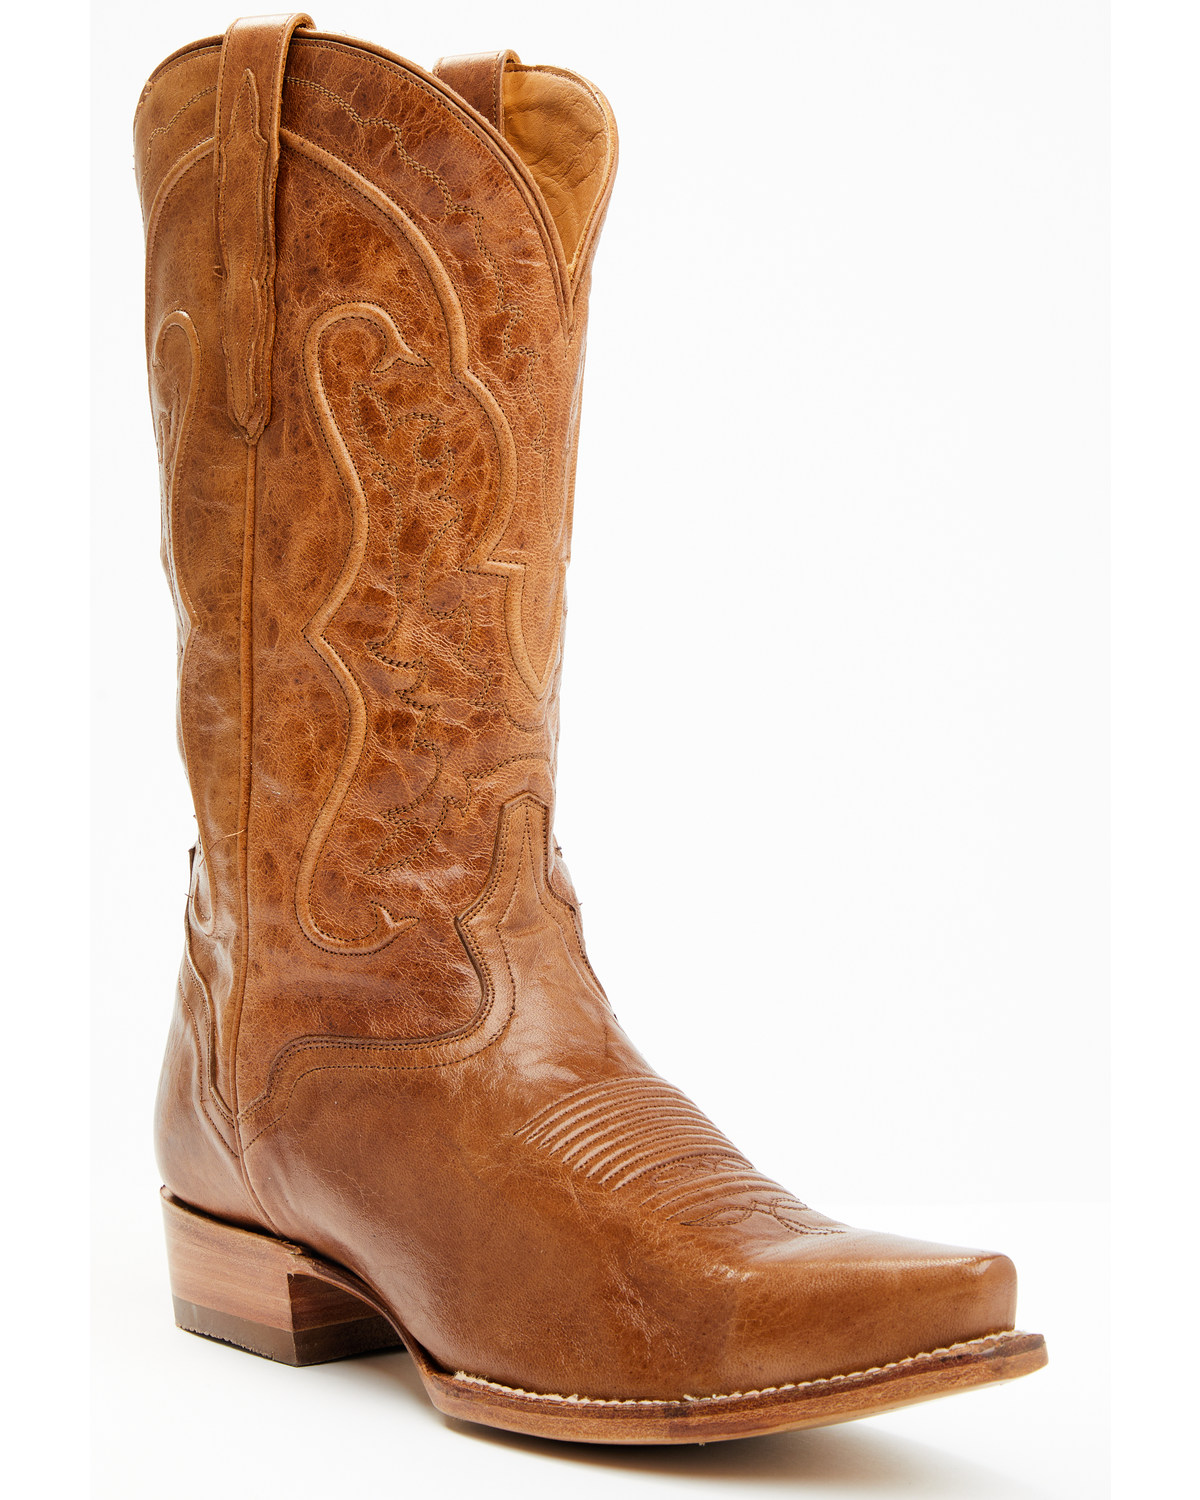 El Dorado Men's 13" Western Boots - Snip Toe